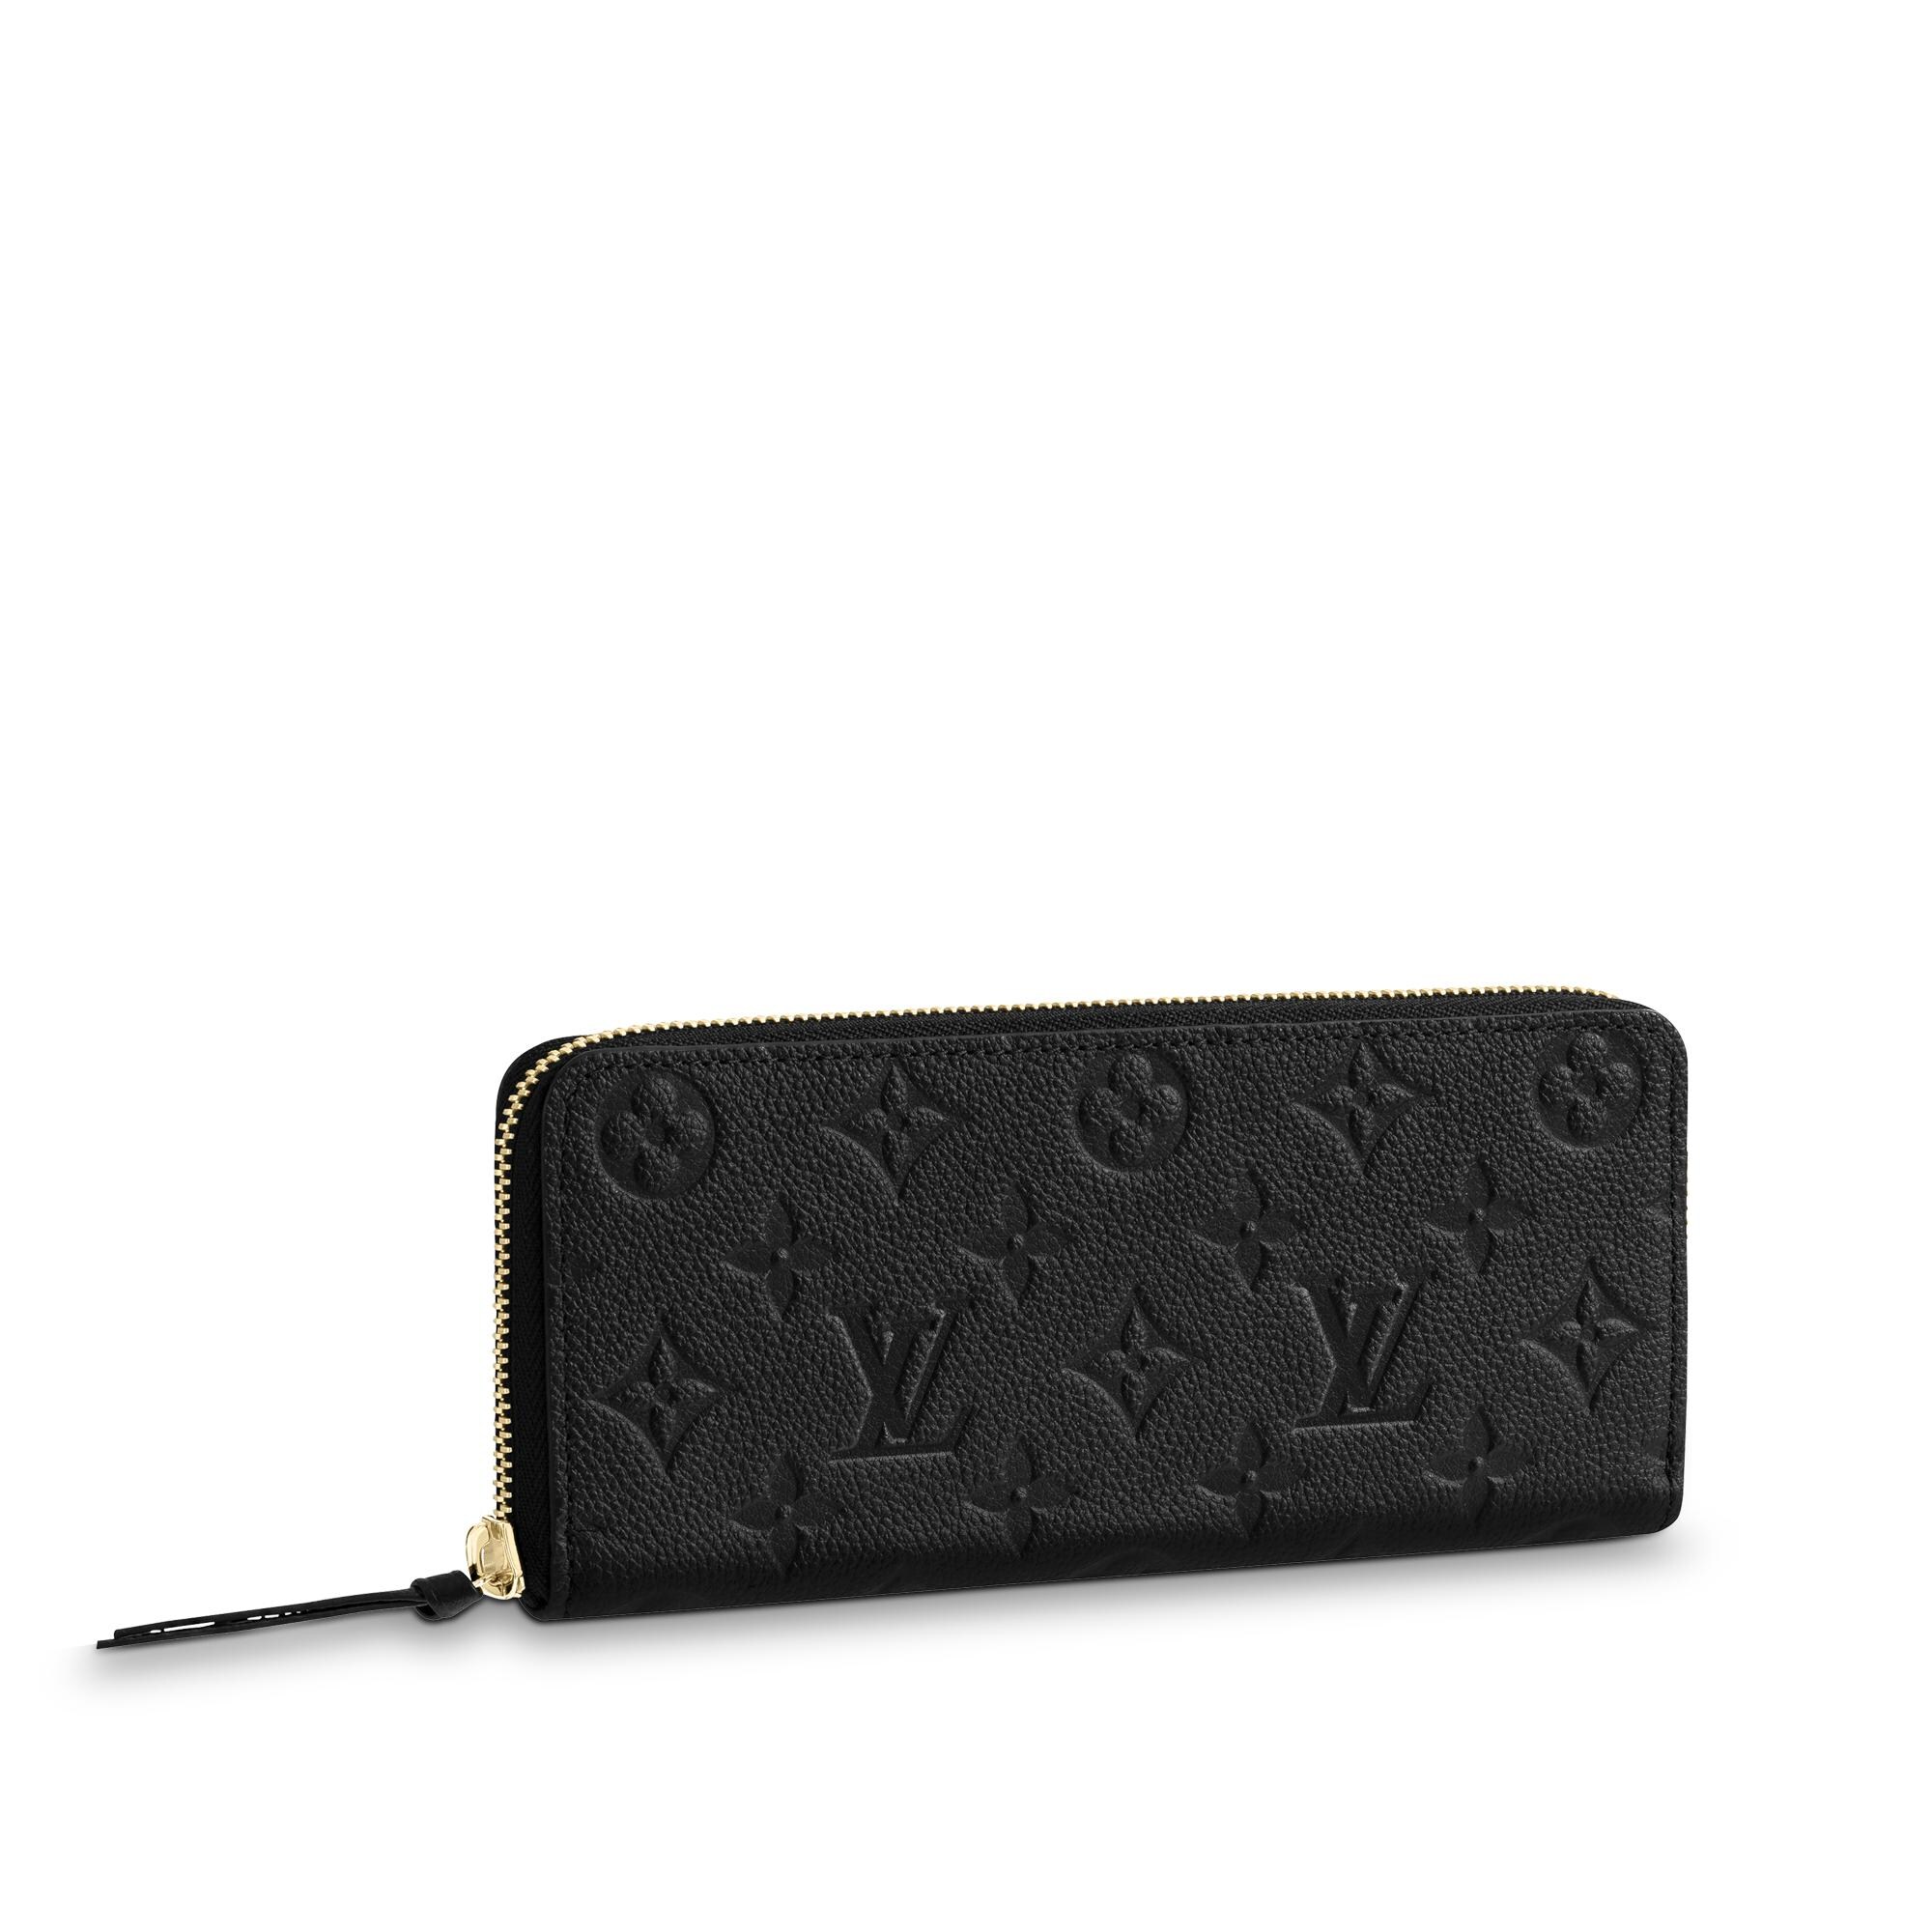 Louis Vuitton Women's Black Leather Zip Wallet – Clémence Empreinte M60171 Black